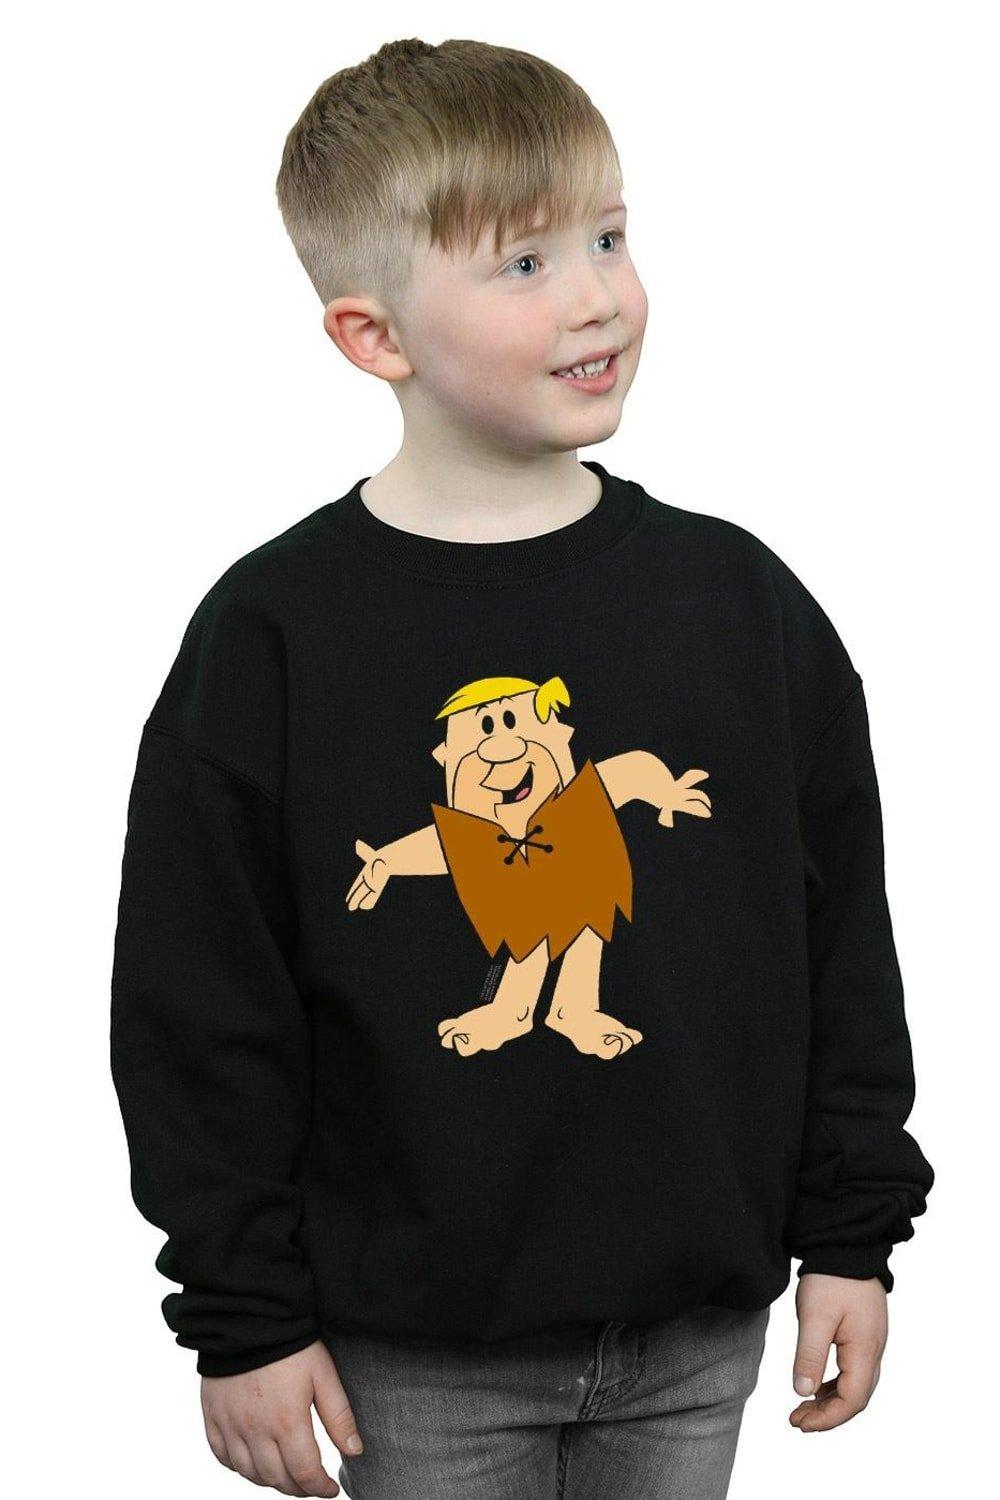 Barney Rubble Classic Pose Sweatshirt